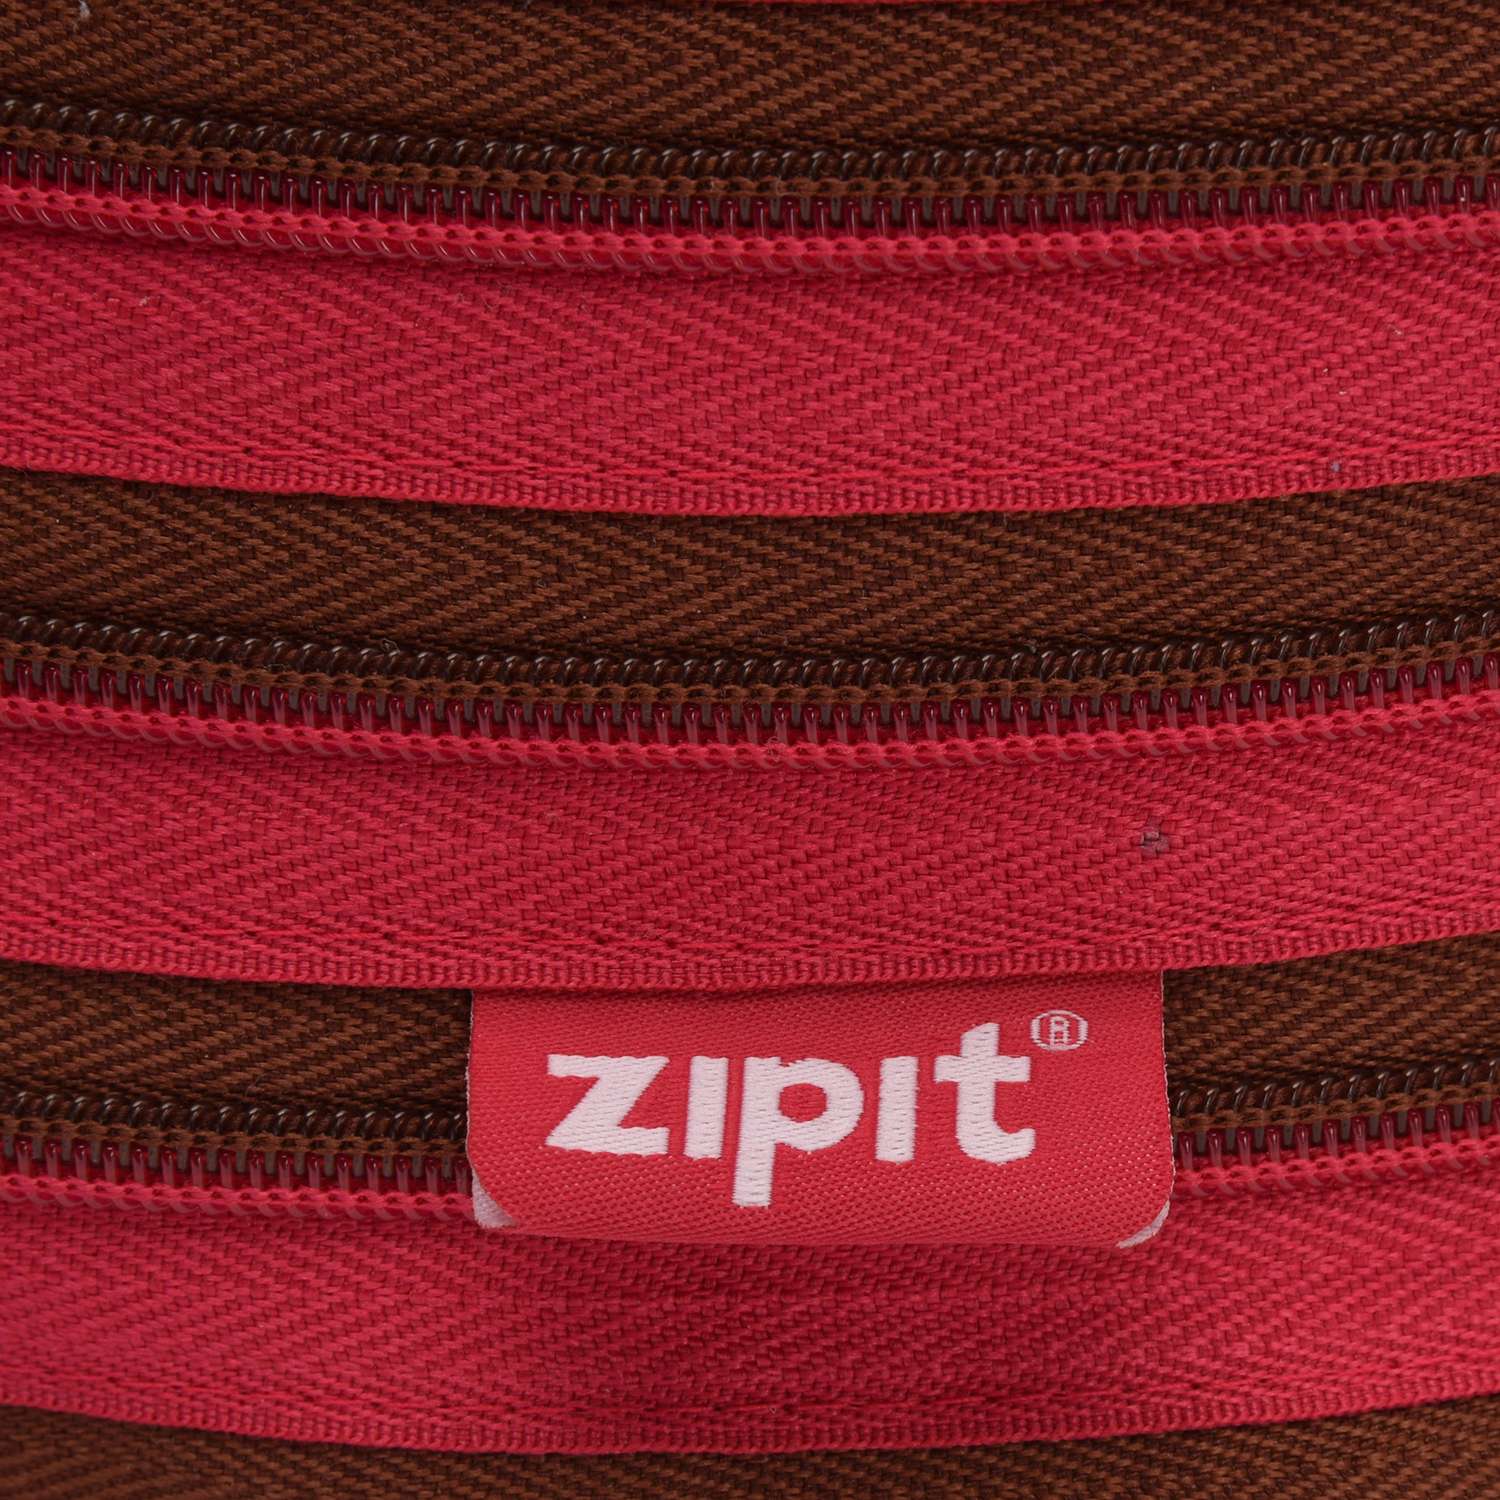 Сумка Zipit Premium Tote/Beach Bag цвет розовый/коричневый - фото 4